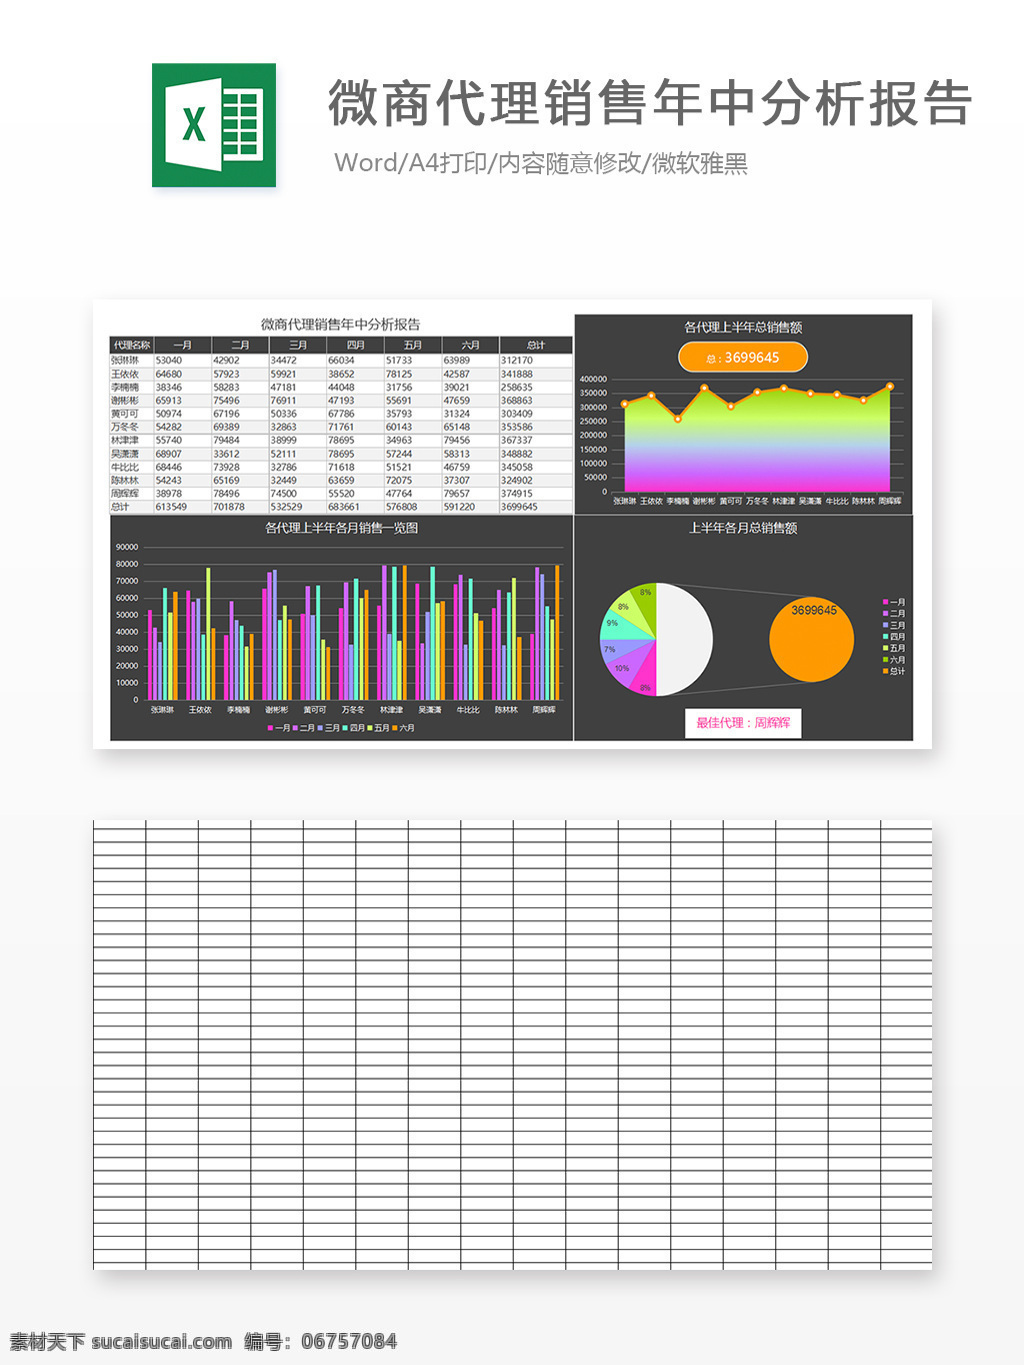 微 商 代理 年中 分析报告 统计 营销 办公 明细表 饼图 报表 分析 图表模板 柱形图 行业表格 折 营销实战工具 营销管理工具